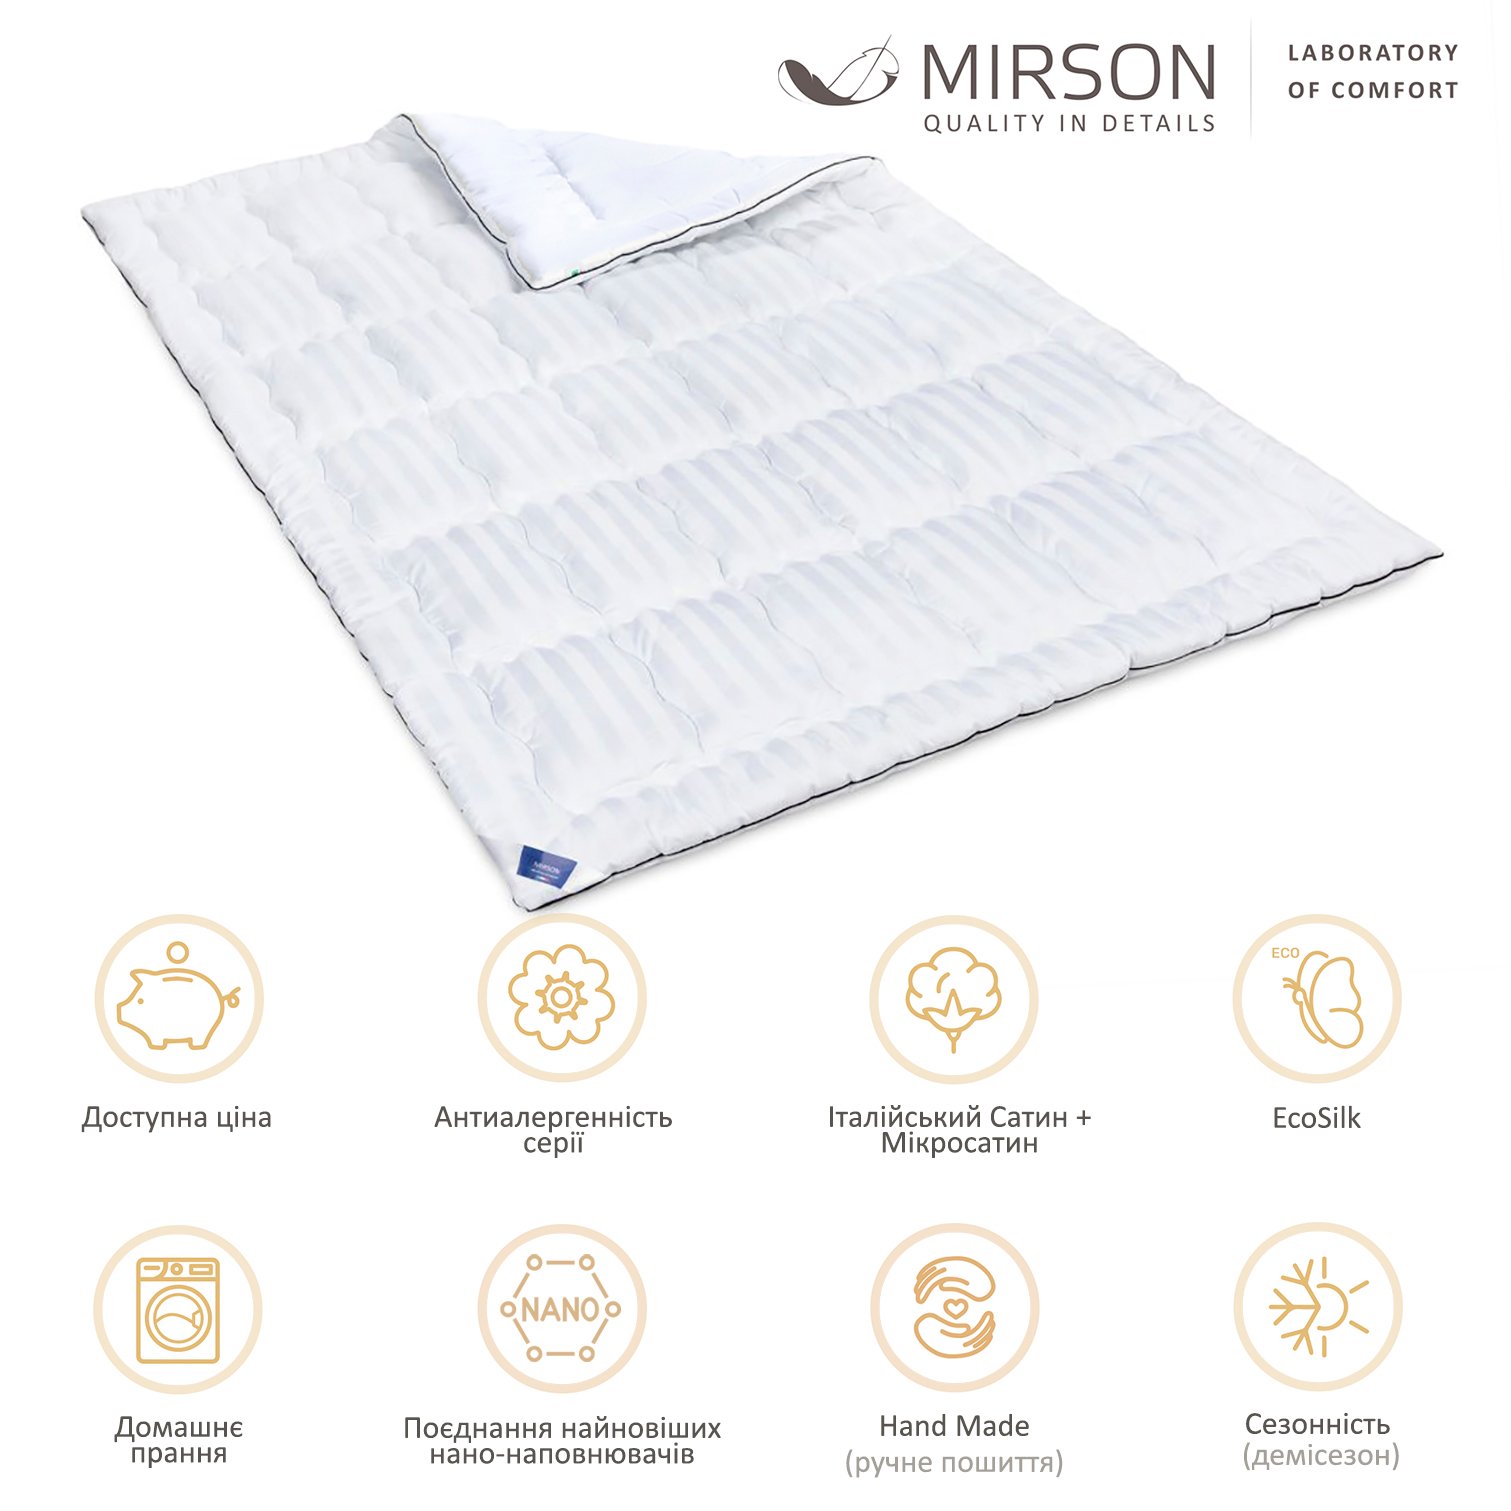 Одеяло антиаллергенное MirSon Royal Pearl Hand Made EcoSilk №0553, демисезонное, 140x205 см, белое - фото 5